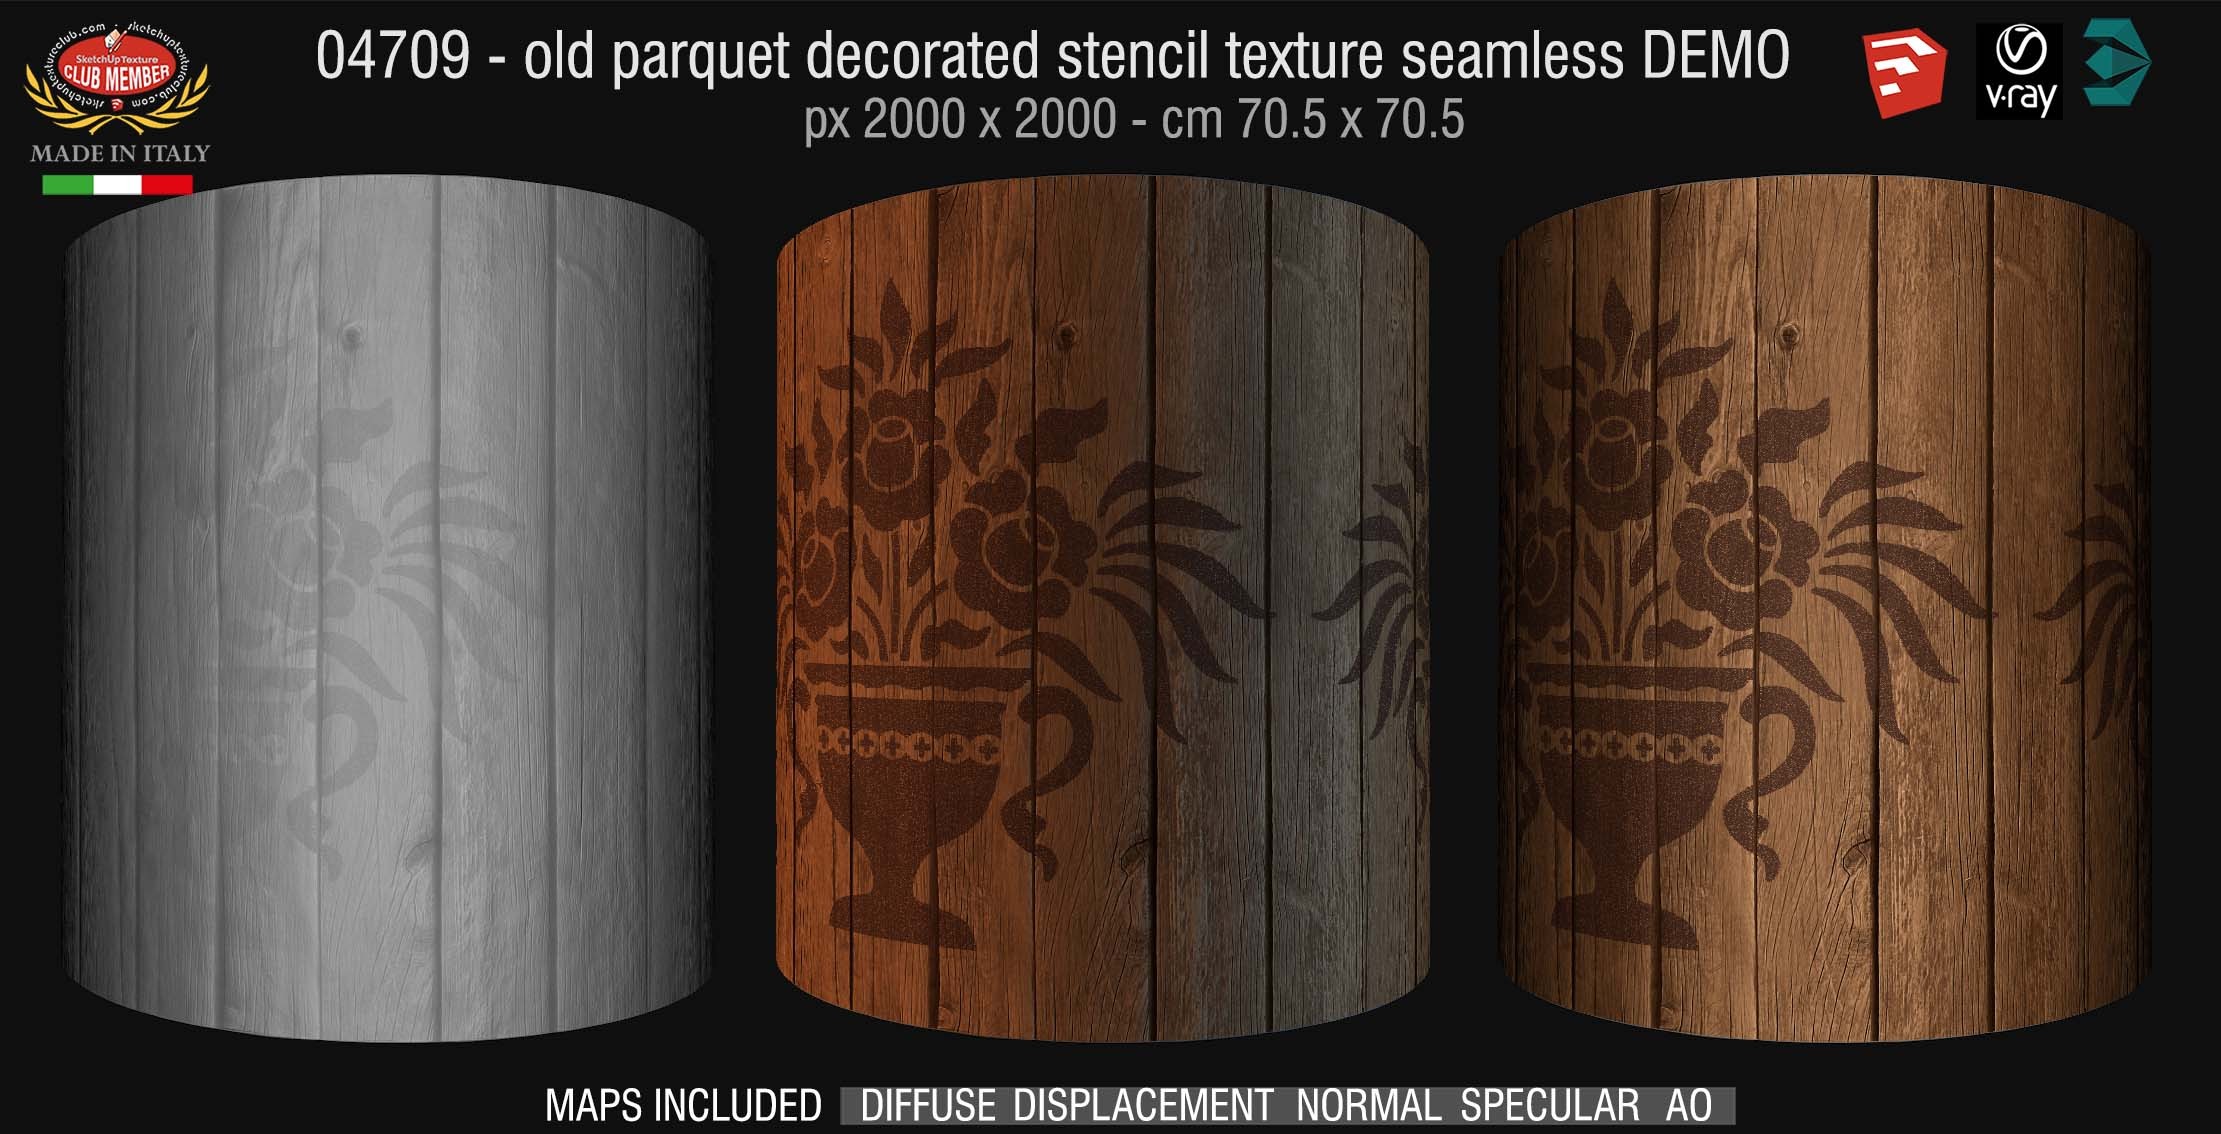 04709 HR Parquet decorated stencil texture seamless + Maps DEMO